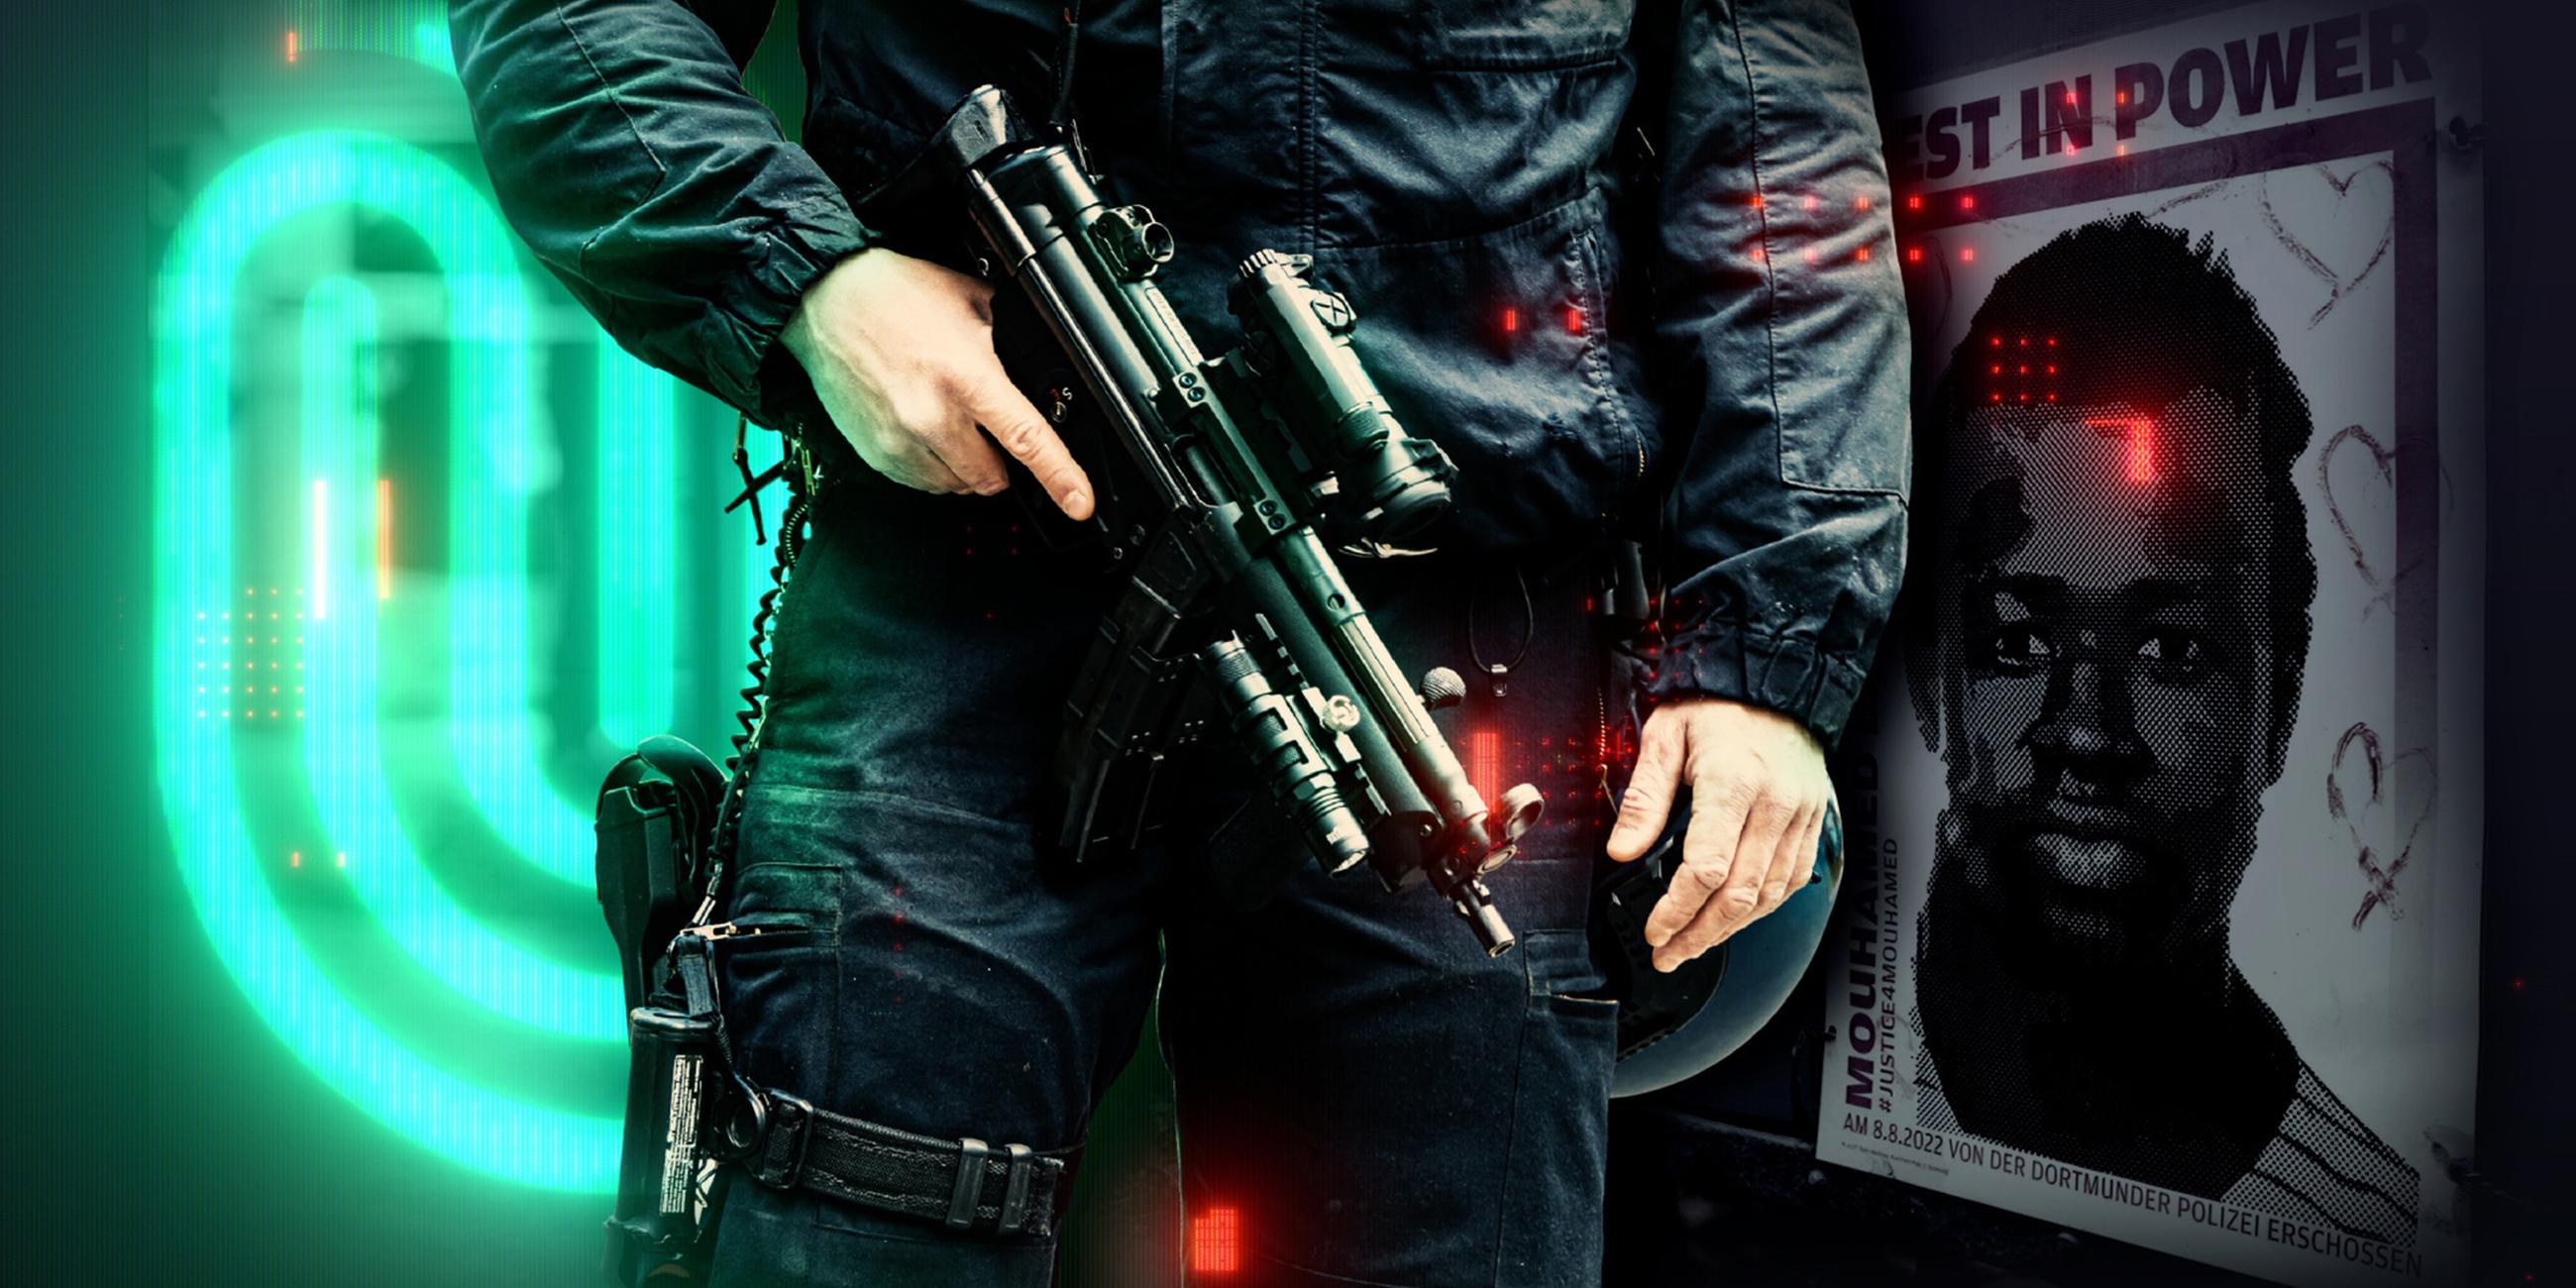 Im Vordergrund steht ein Polizist mit Maschinenpistole in der Hand, dahinter links das grün leuchtende Spur-Logo, rechts sieht man ein Plakat, auf dem Mouhamed zu sehen ist.